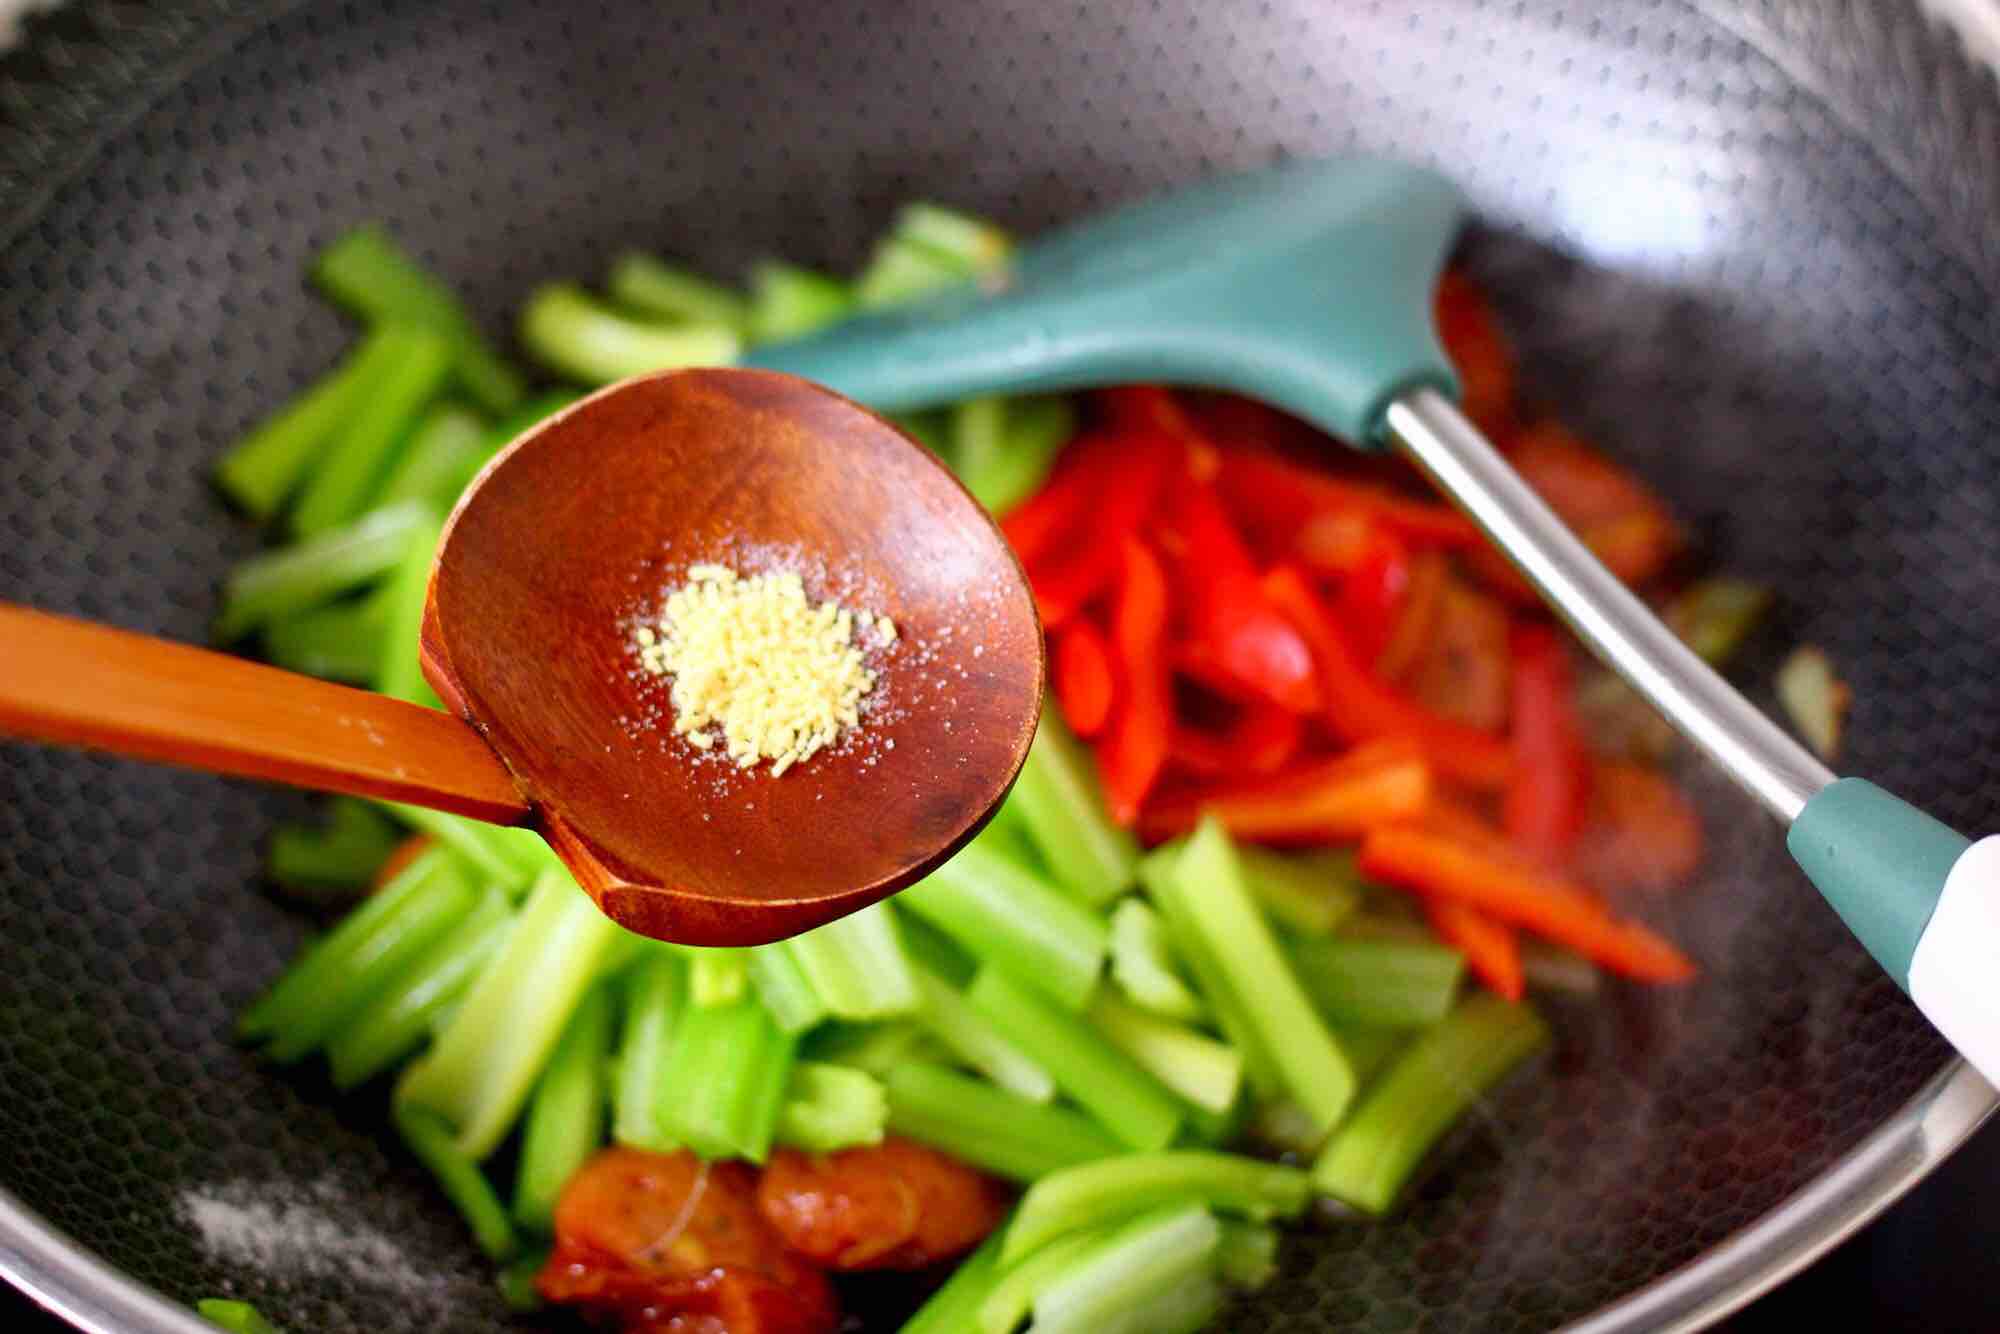 Spicy Stir-fried Celery recipe